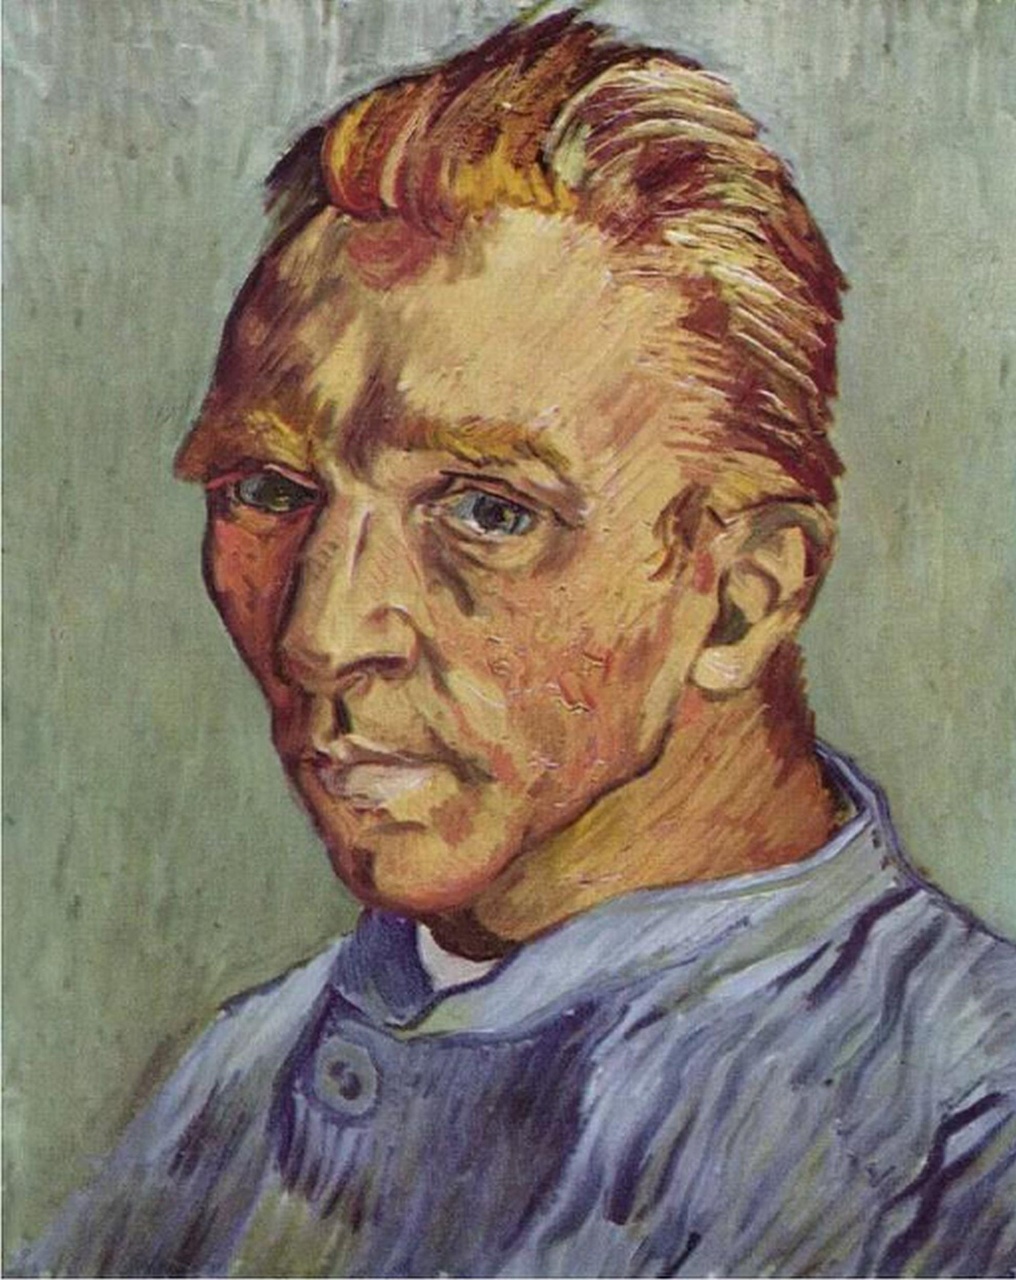 這幅《沒鬍子的自畫像》是梵高的最後一幅自畫像，畫於1889年，梵高刻意把自己畫得比現實中要讓自己健康、年輕，然而這些都無法掩飾他眼底的孤獨。1890年7月，梵高在精神錯亂中開槍自殺，年僅37歲。
